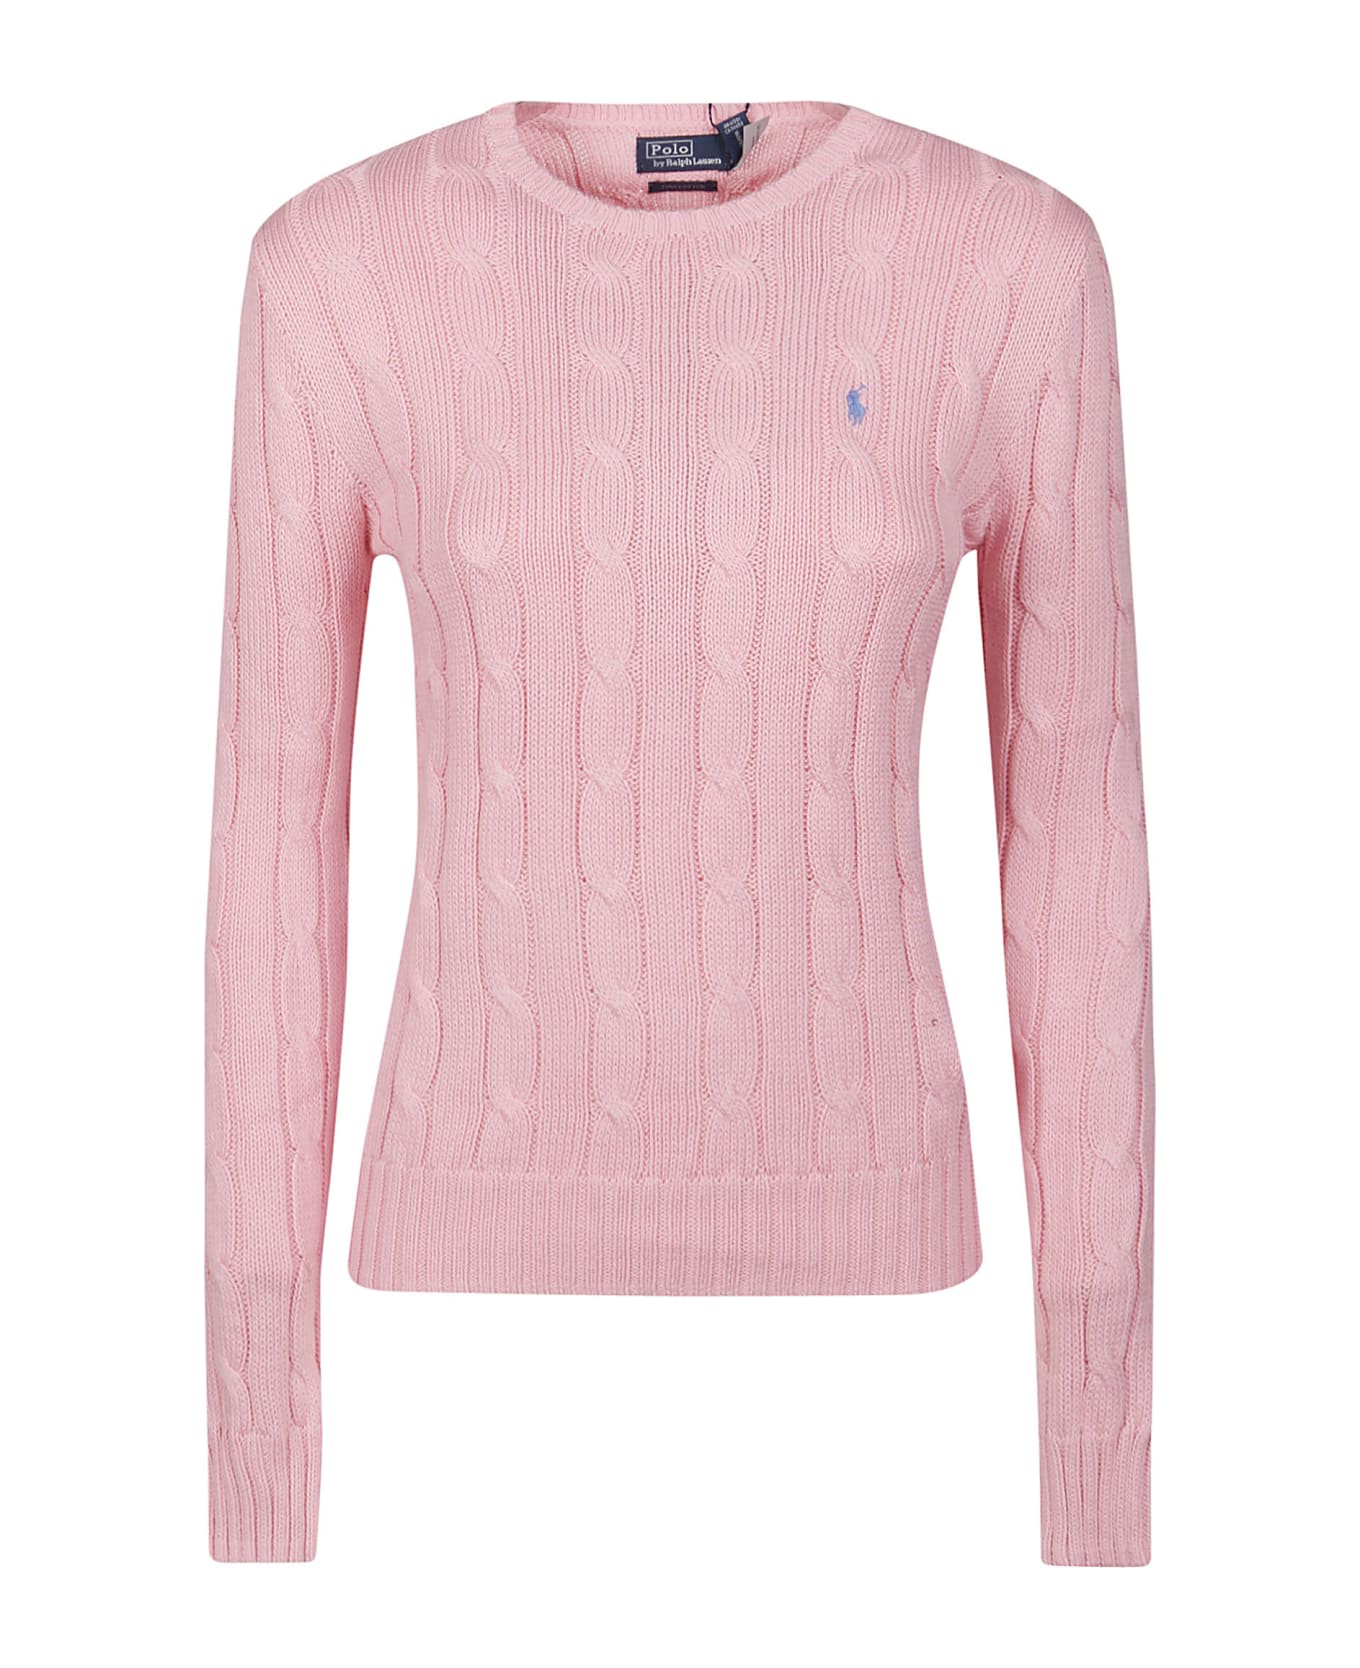 Polo Ralph Lauren Julianna Sweater - Carmel Pink